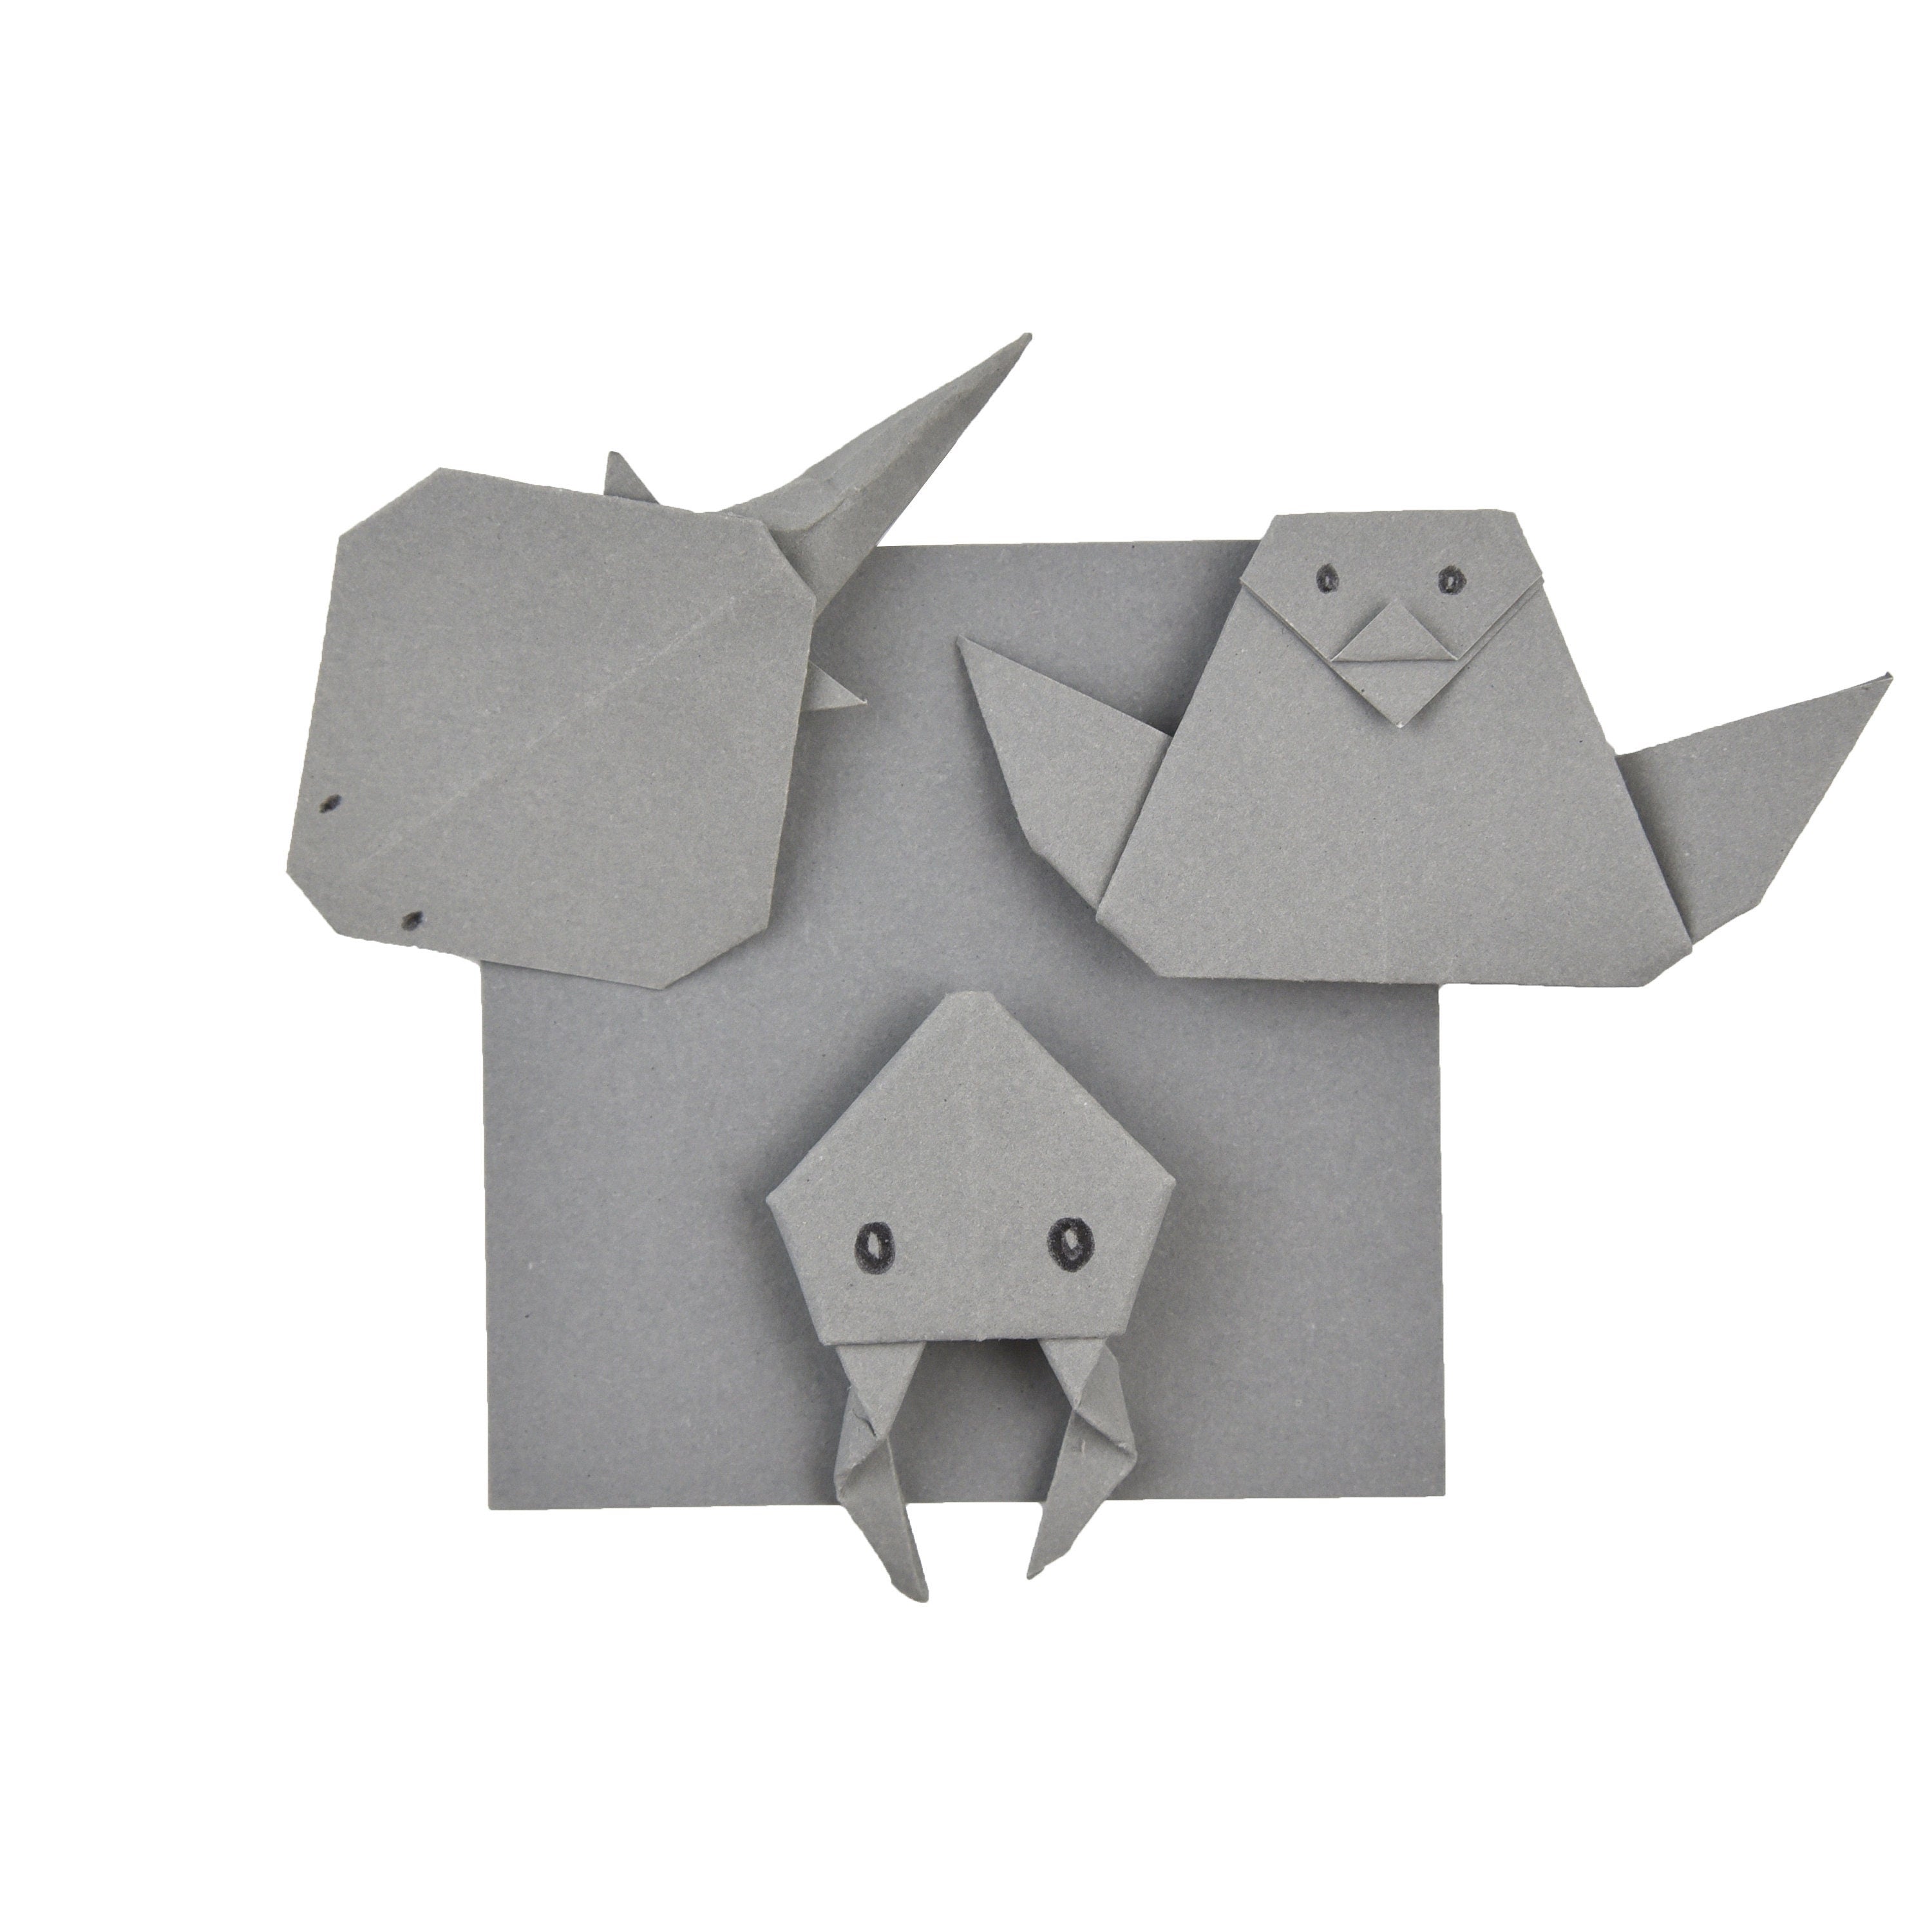 100 Hojas de Papel Origami Gris - 6x6 pulgadas - Paquete de Papel Cuadrado para Plegar, Grullas de Origami y Decoración - S10